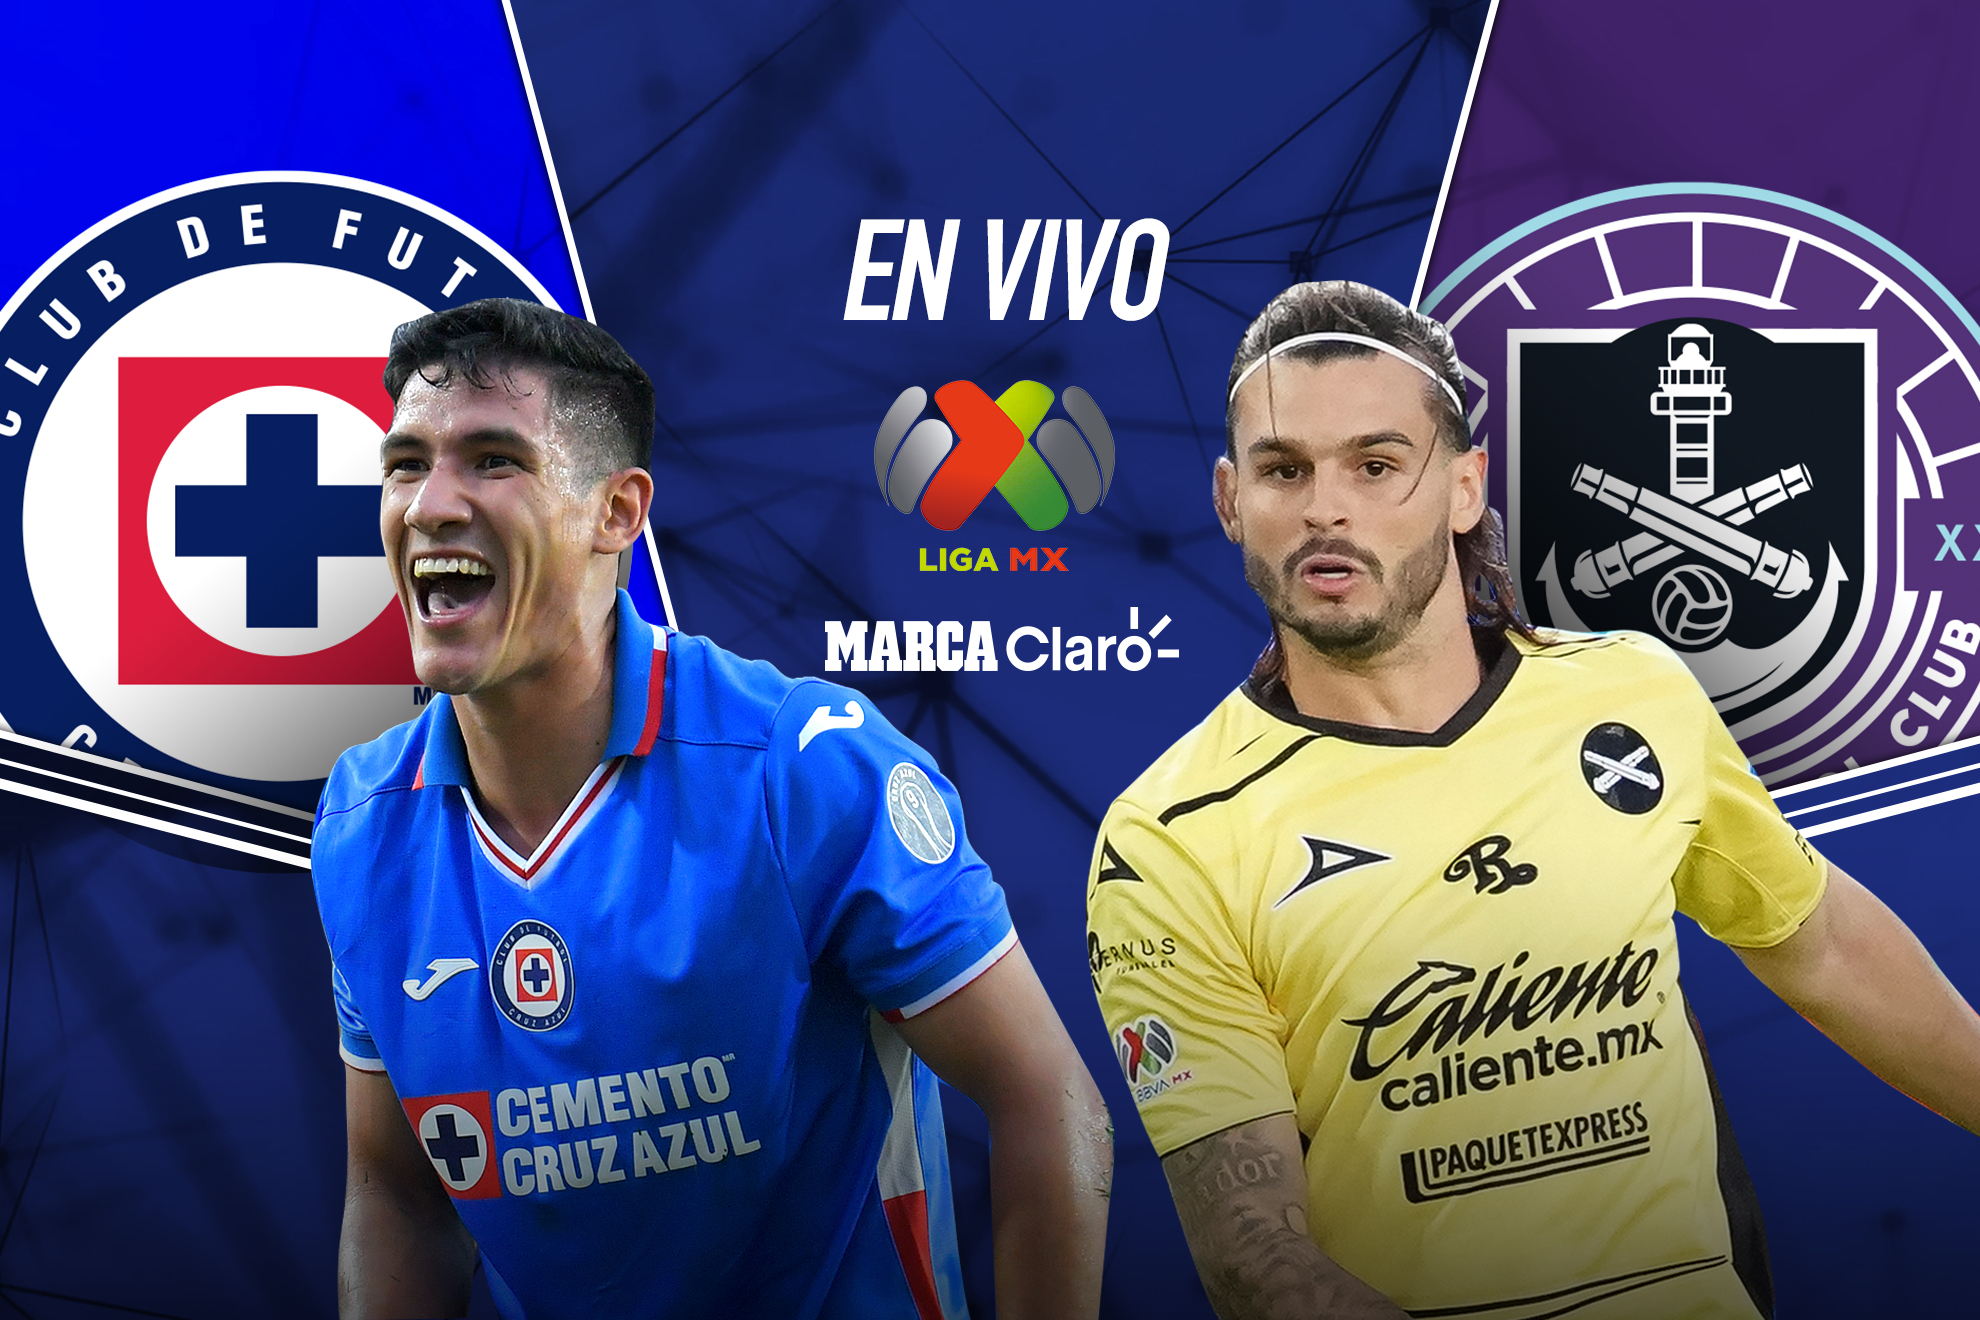 Cruz Azul vs Mazatlán, en vivo y en directo online: marcador y resultado de hoy en directo. | MARCA Claro